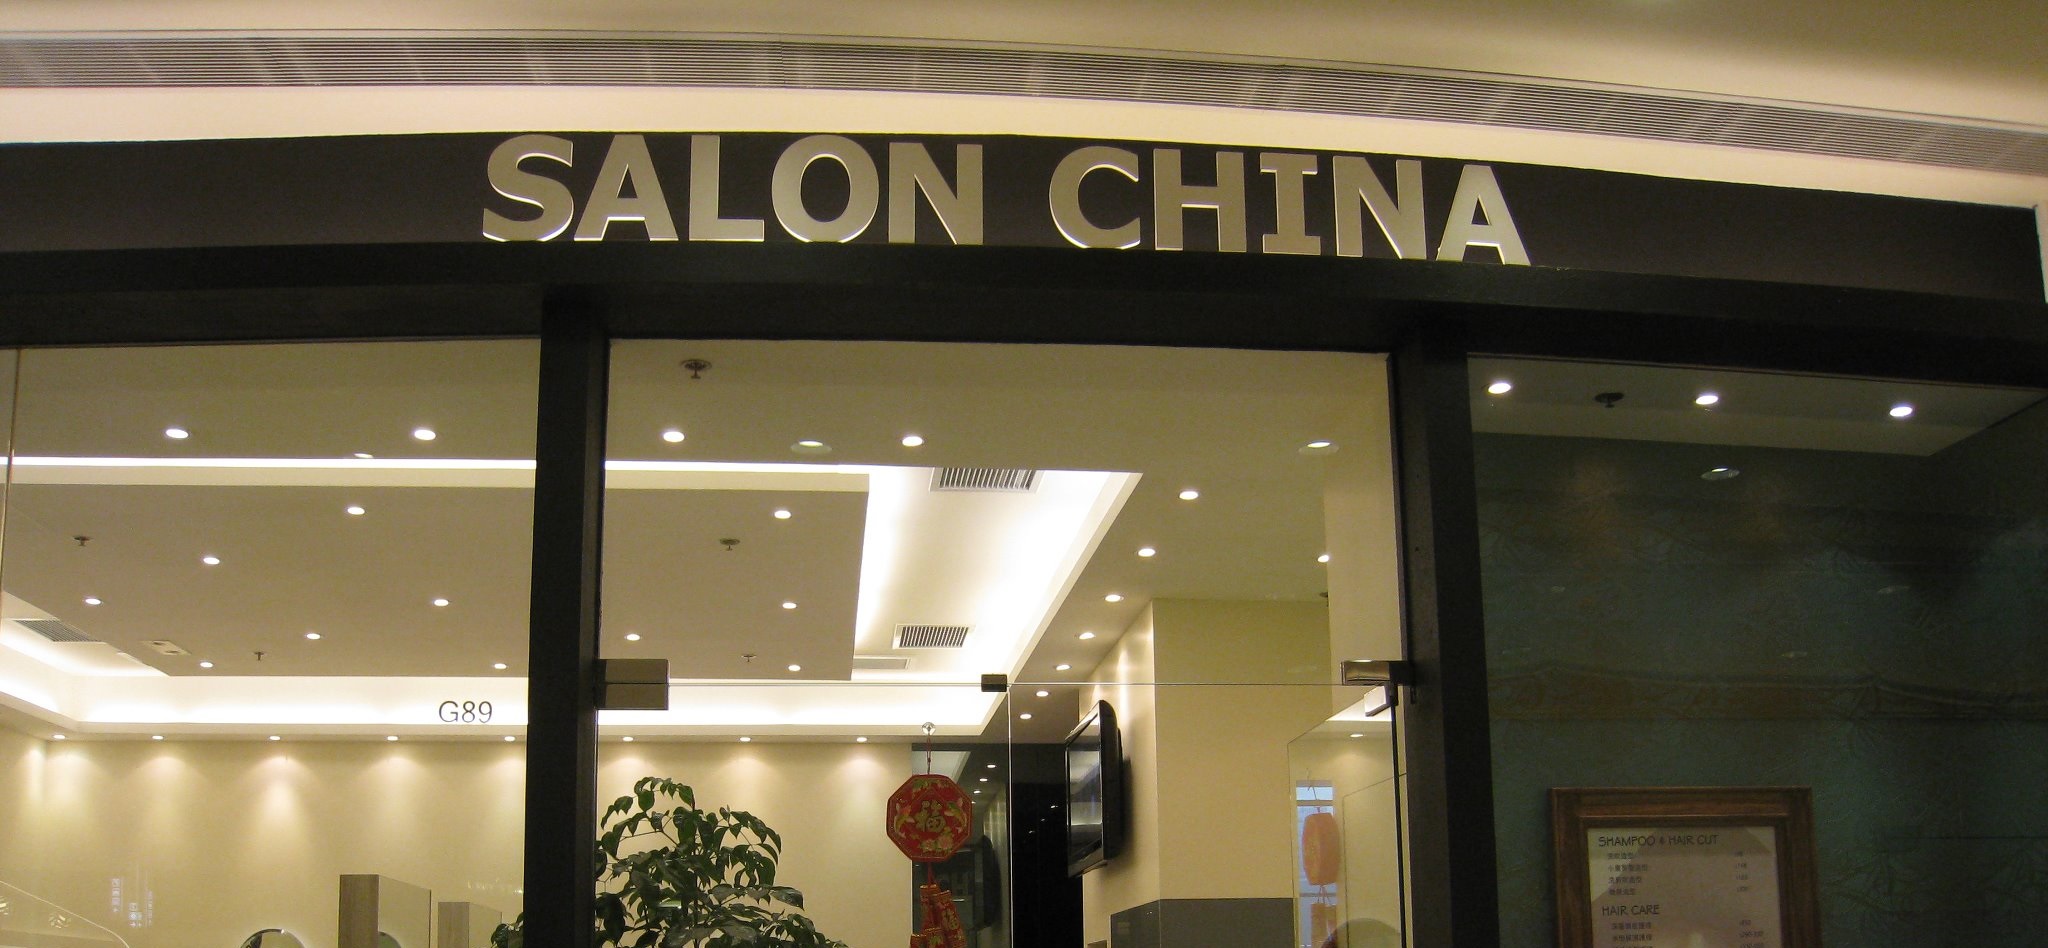 電髮/負離子: Salon China (沙田中心商場)